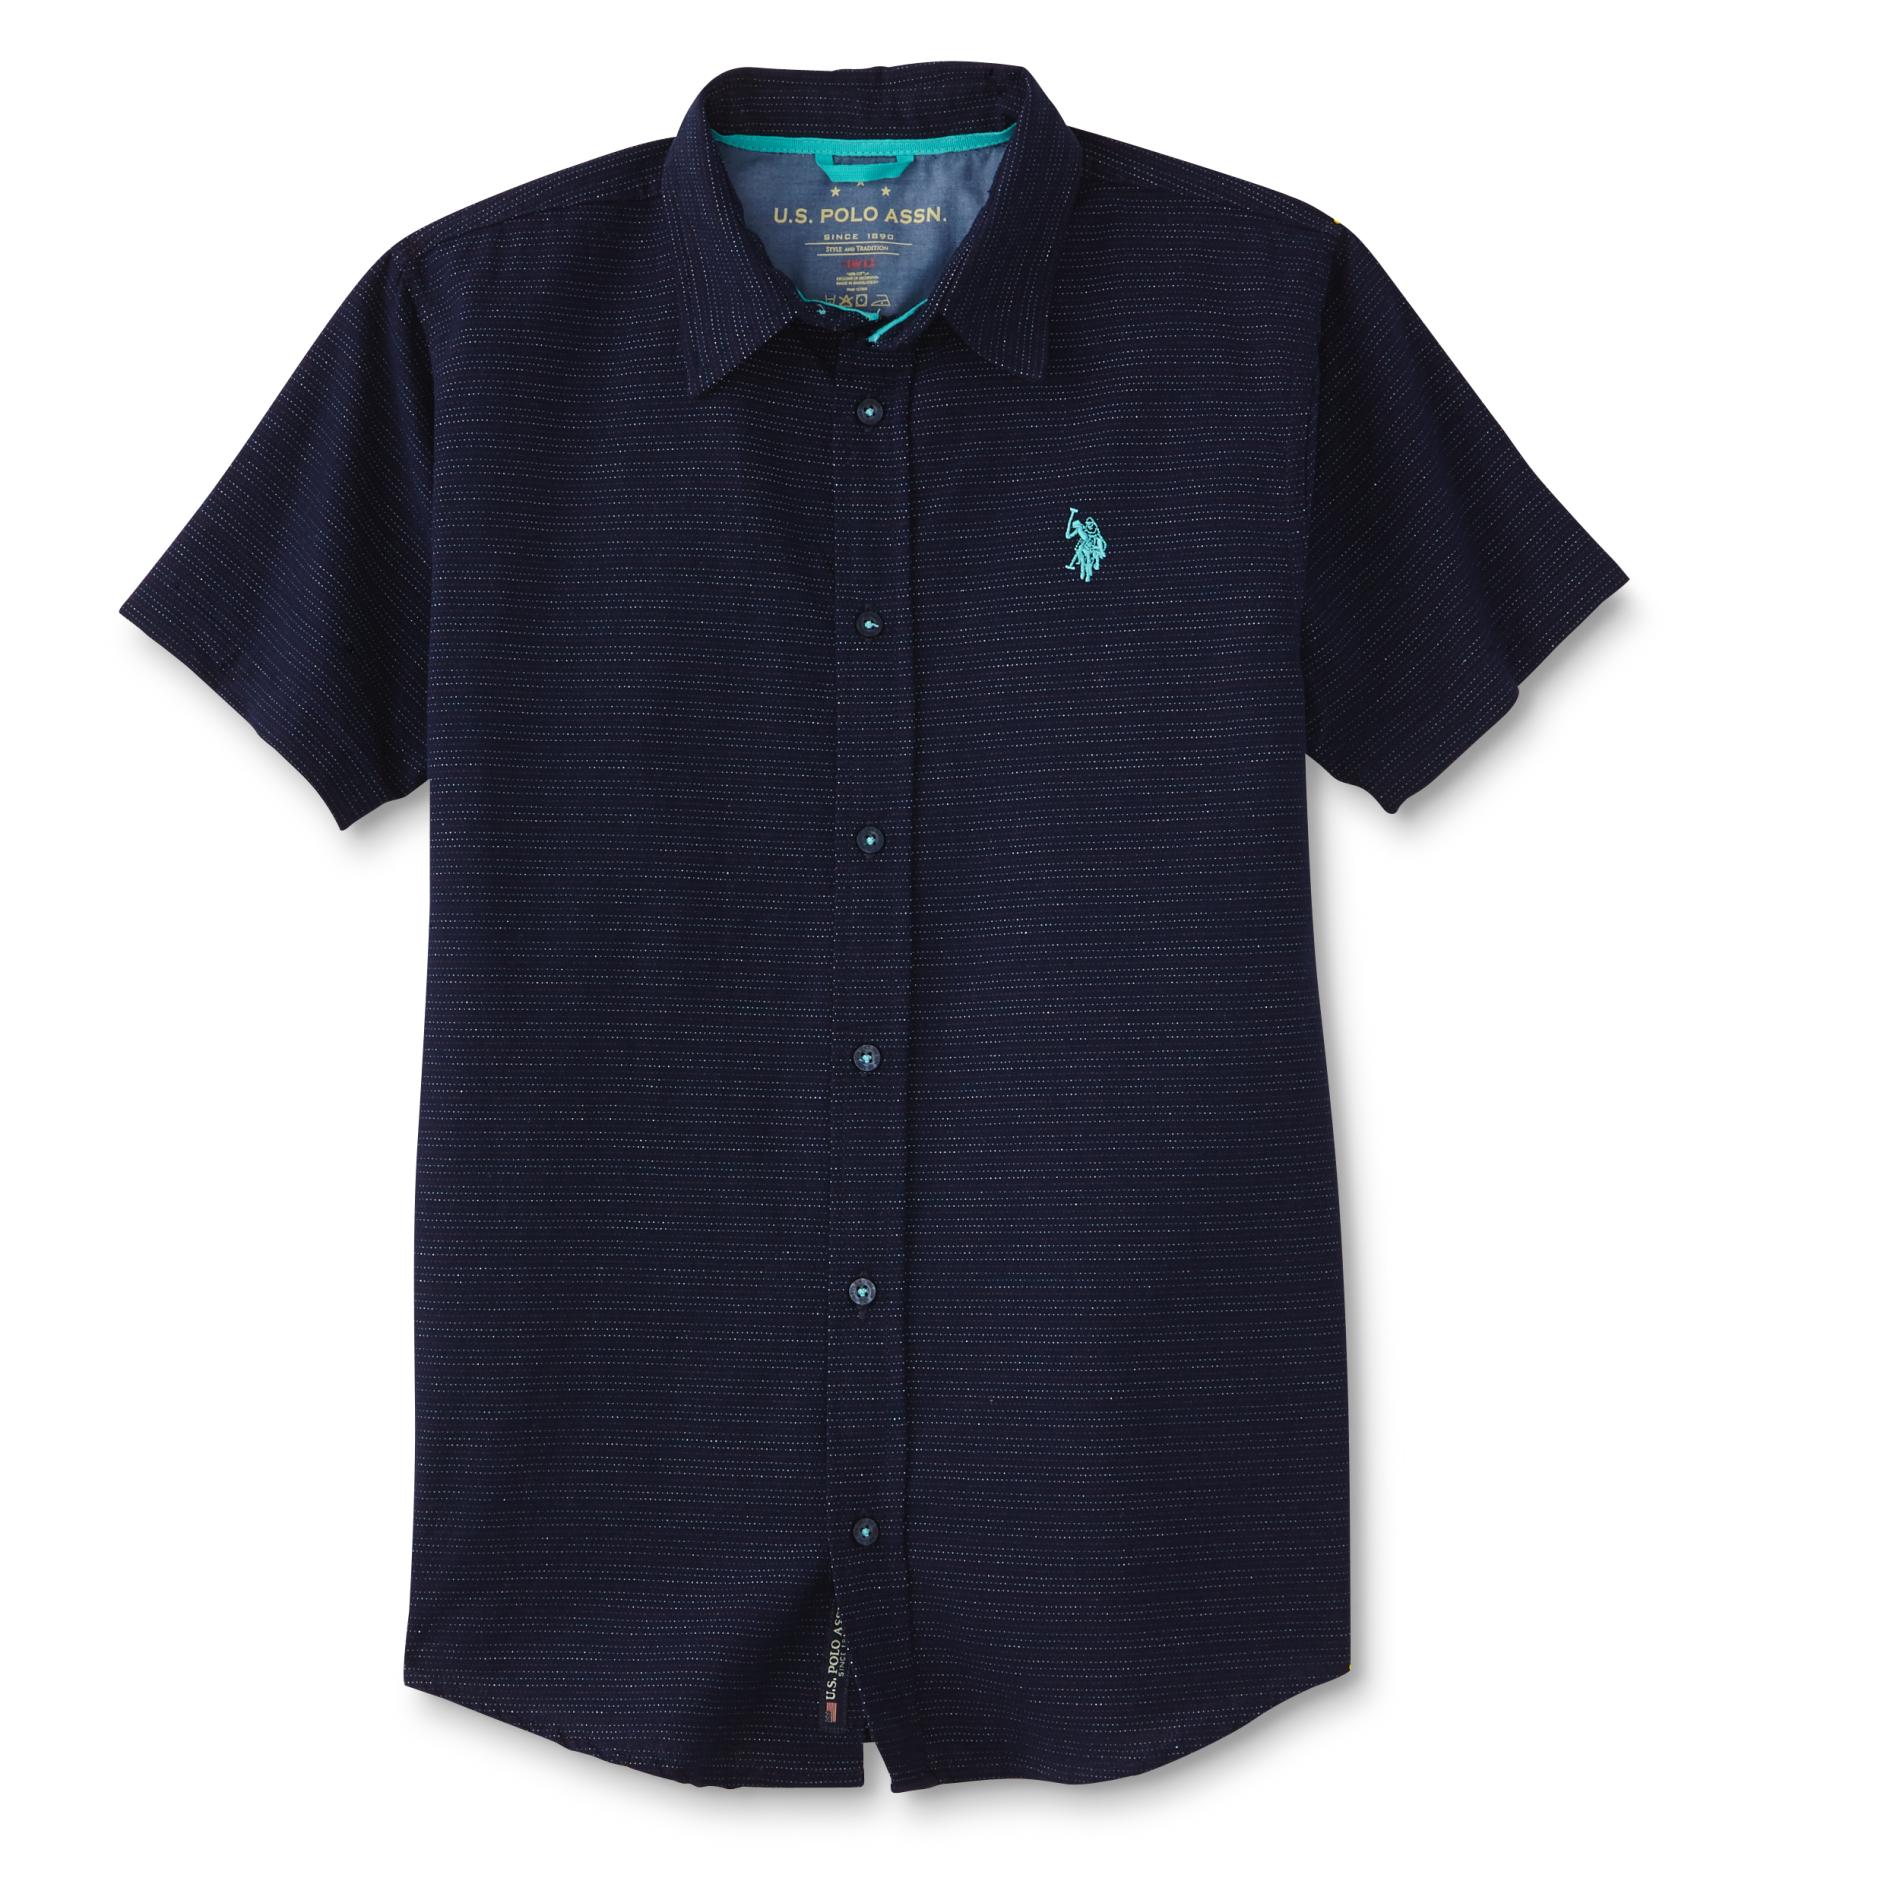 U.S. Polo Assn. Boys' Button-Front Shirt